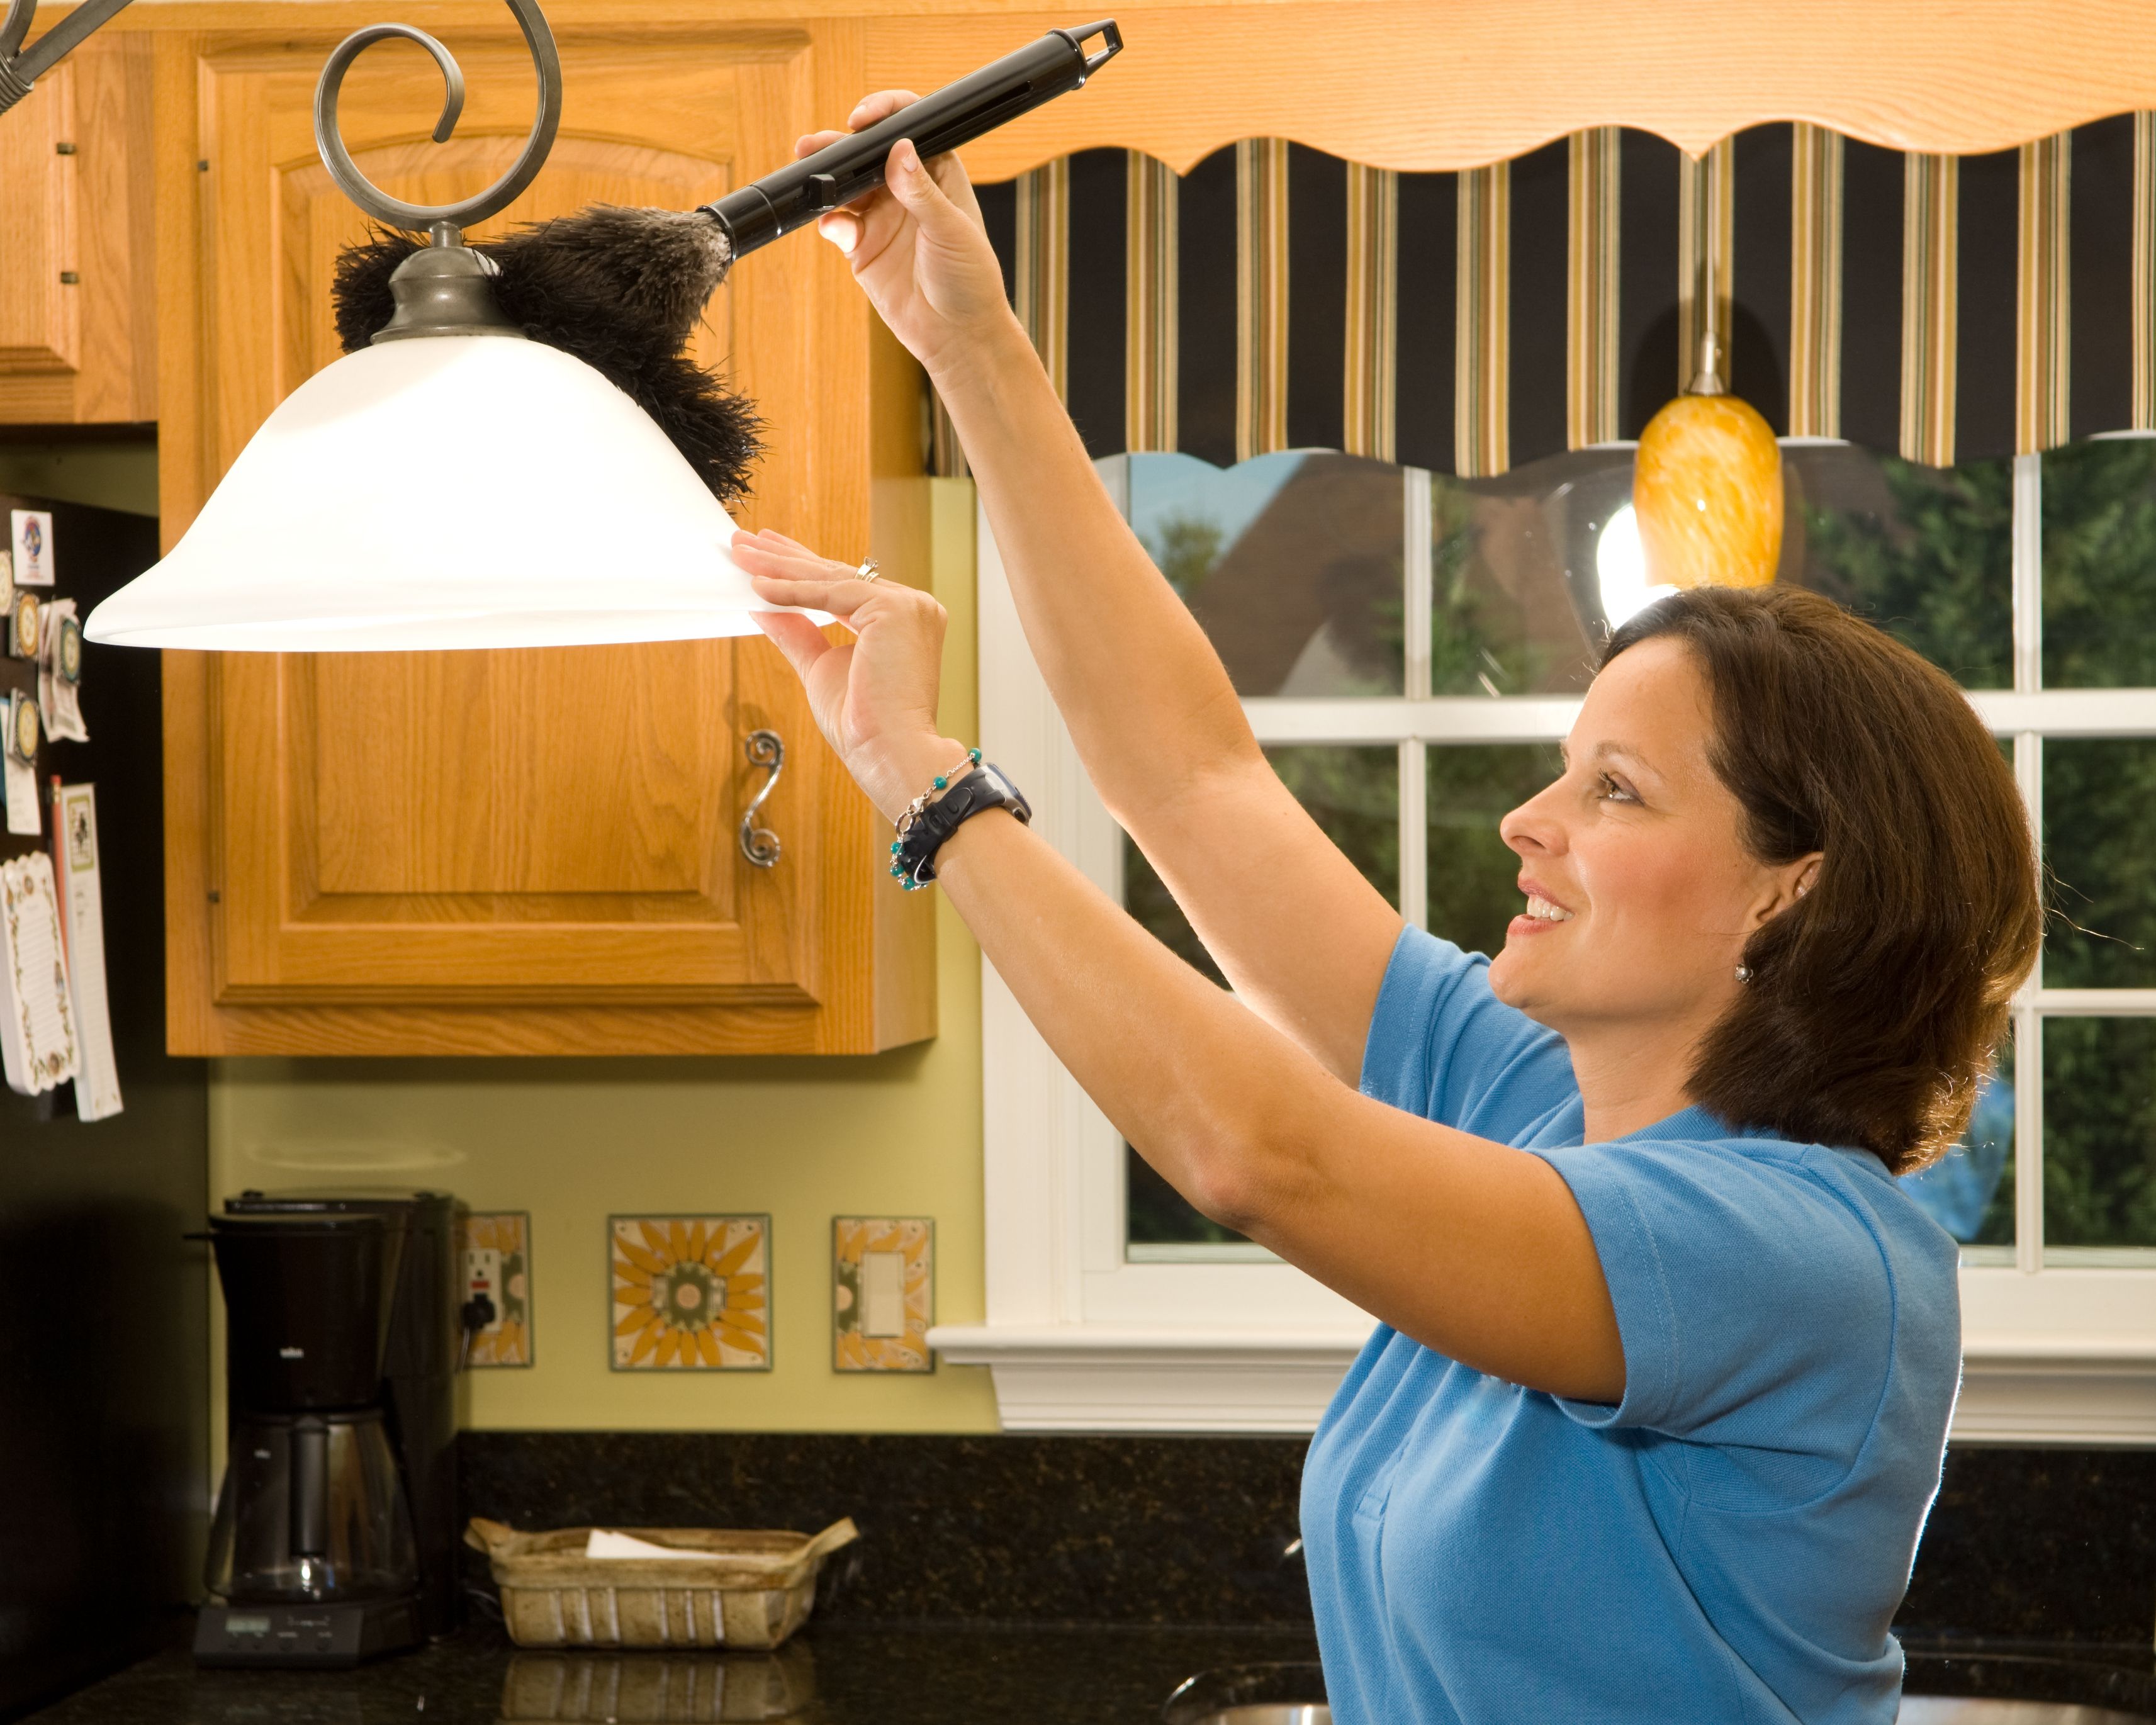 Une femme qui nettoie la maison | Source : Getty Images